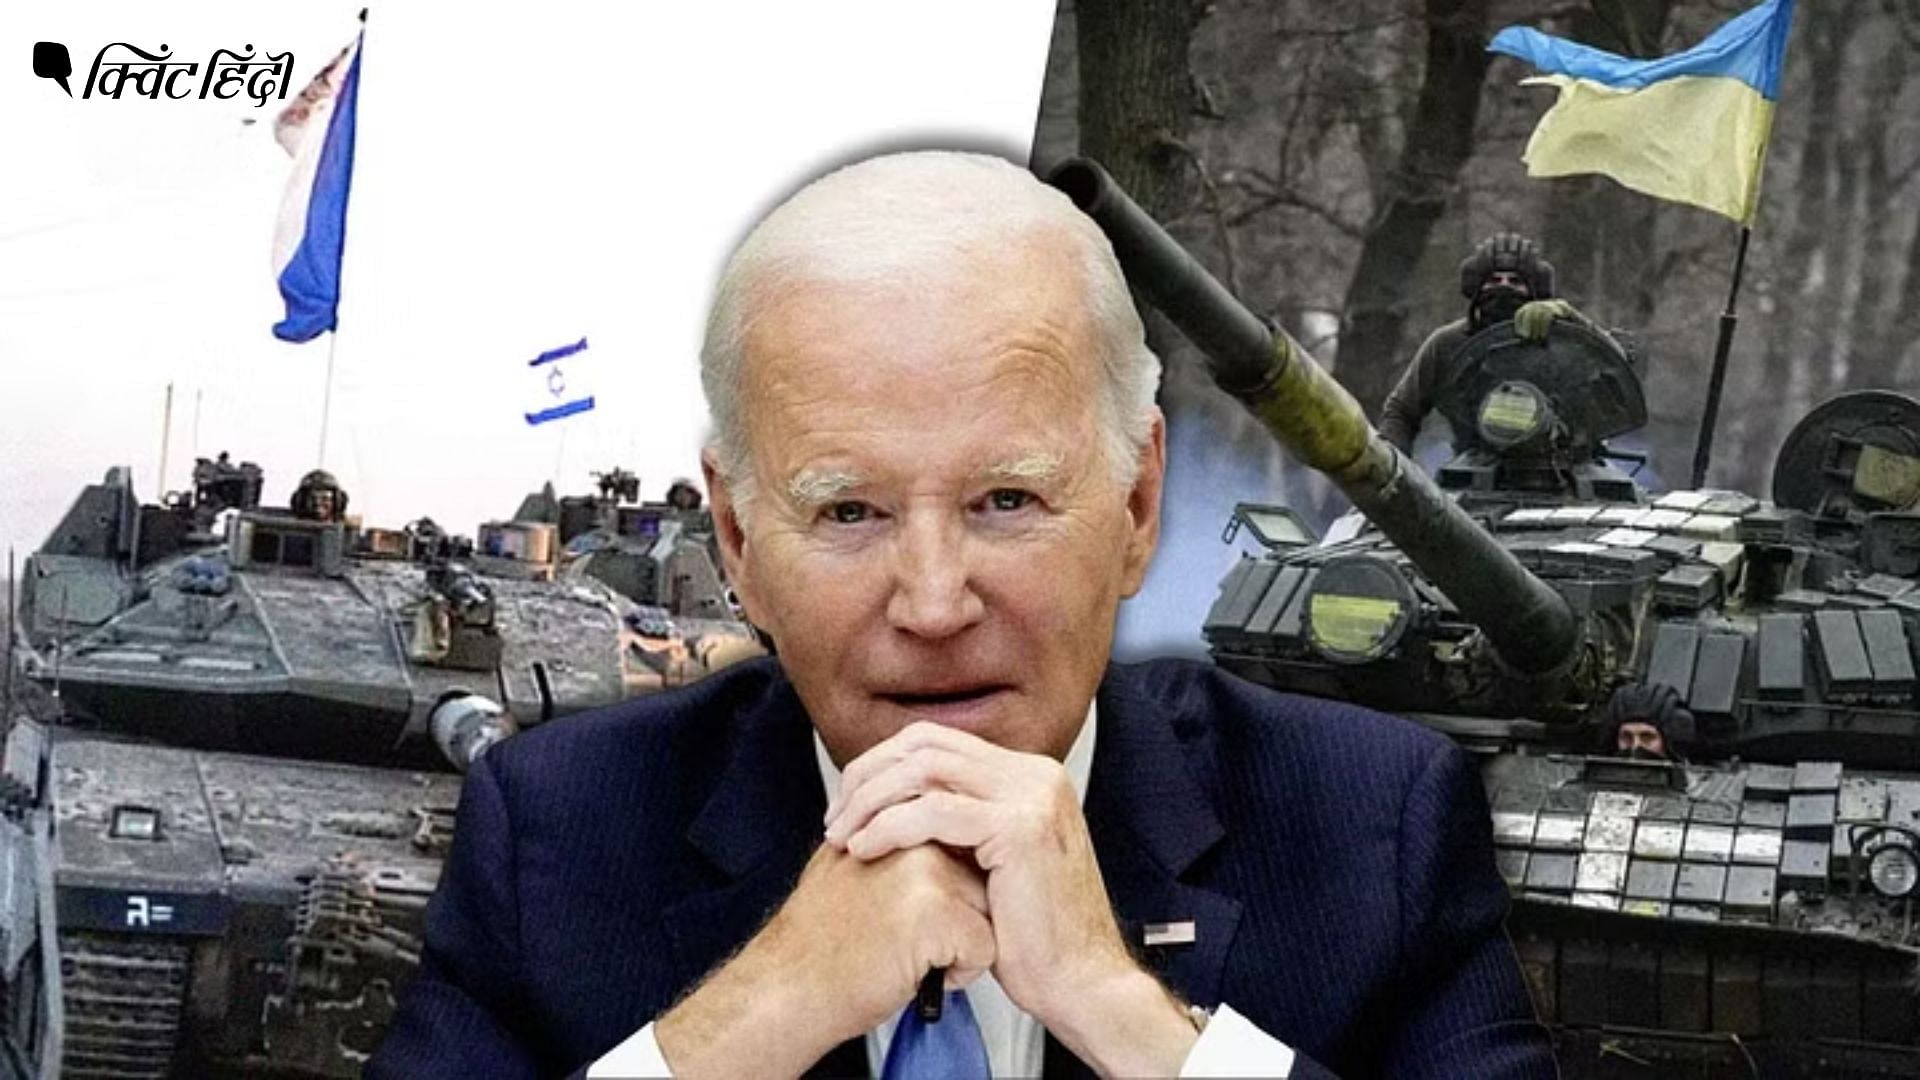 <div class="paragraphs"><p>दो युद्धों का समर्थन आसान नहीं, इजरायल-यूक्रेन दोनों की सहायता कैसे करेगा अमेरिका?</p></div>